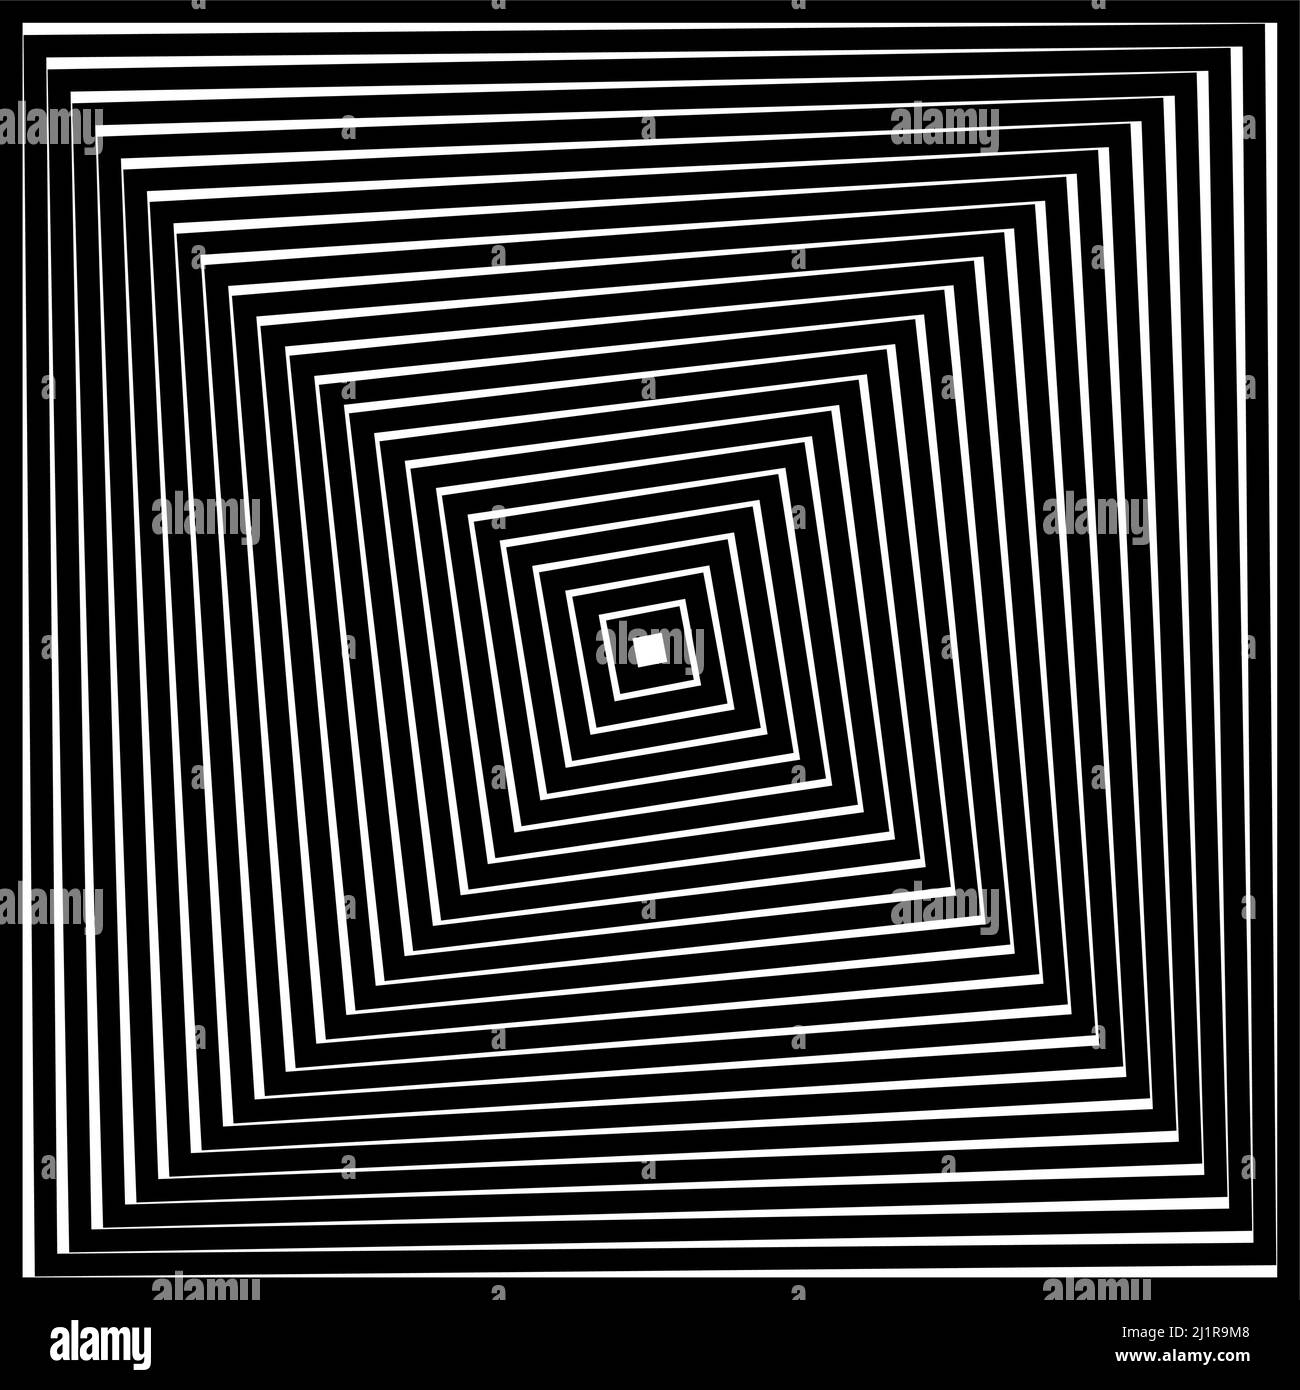 Op Art Quadrate in Schwarz und Weiß mit optischem Verzerrungseffekt, der eine optische Illusion von Pyramiden oder Tunneln erzeugt. Hypnotisches Banner, Vektor Stock Vektor